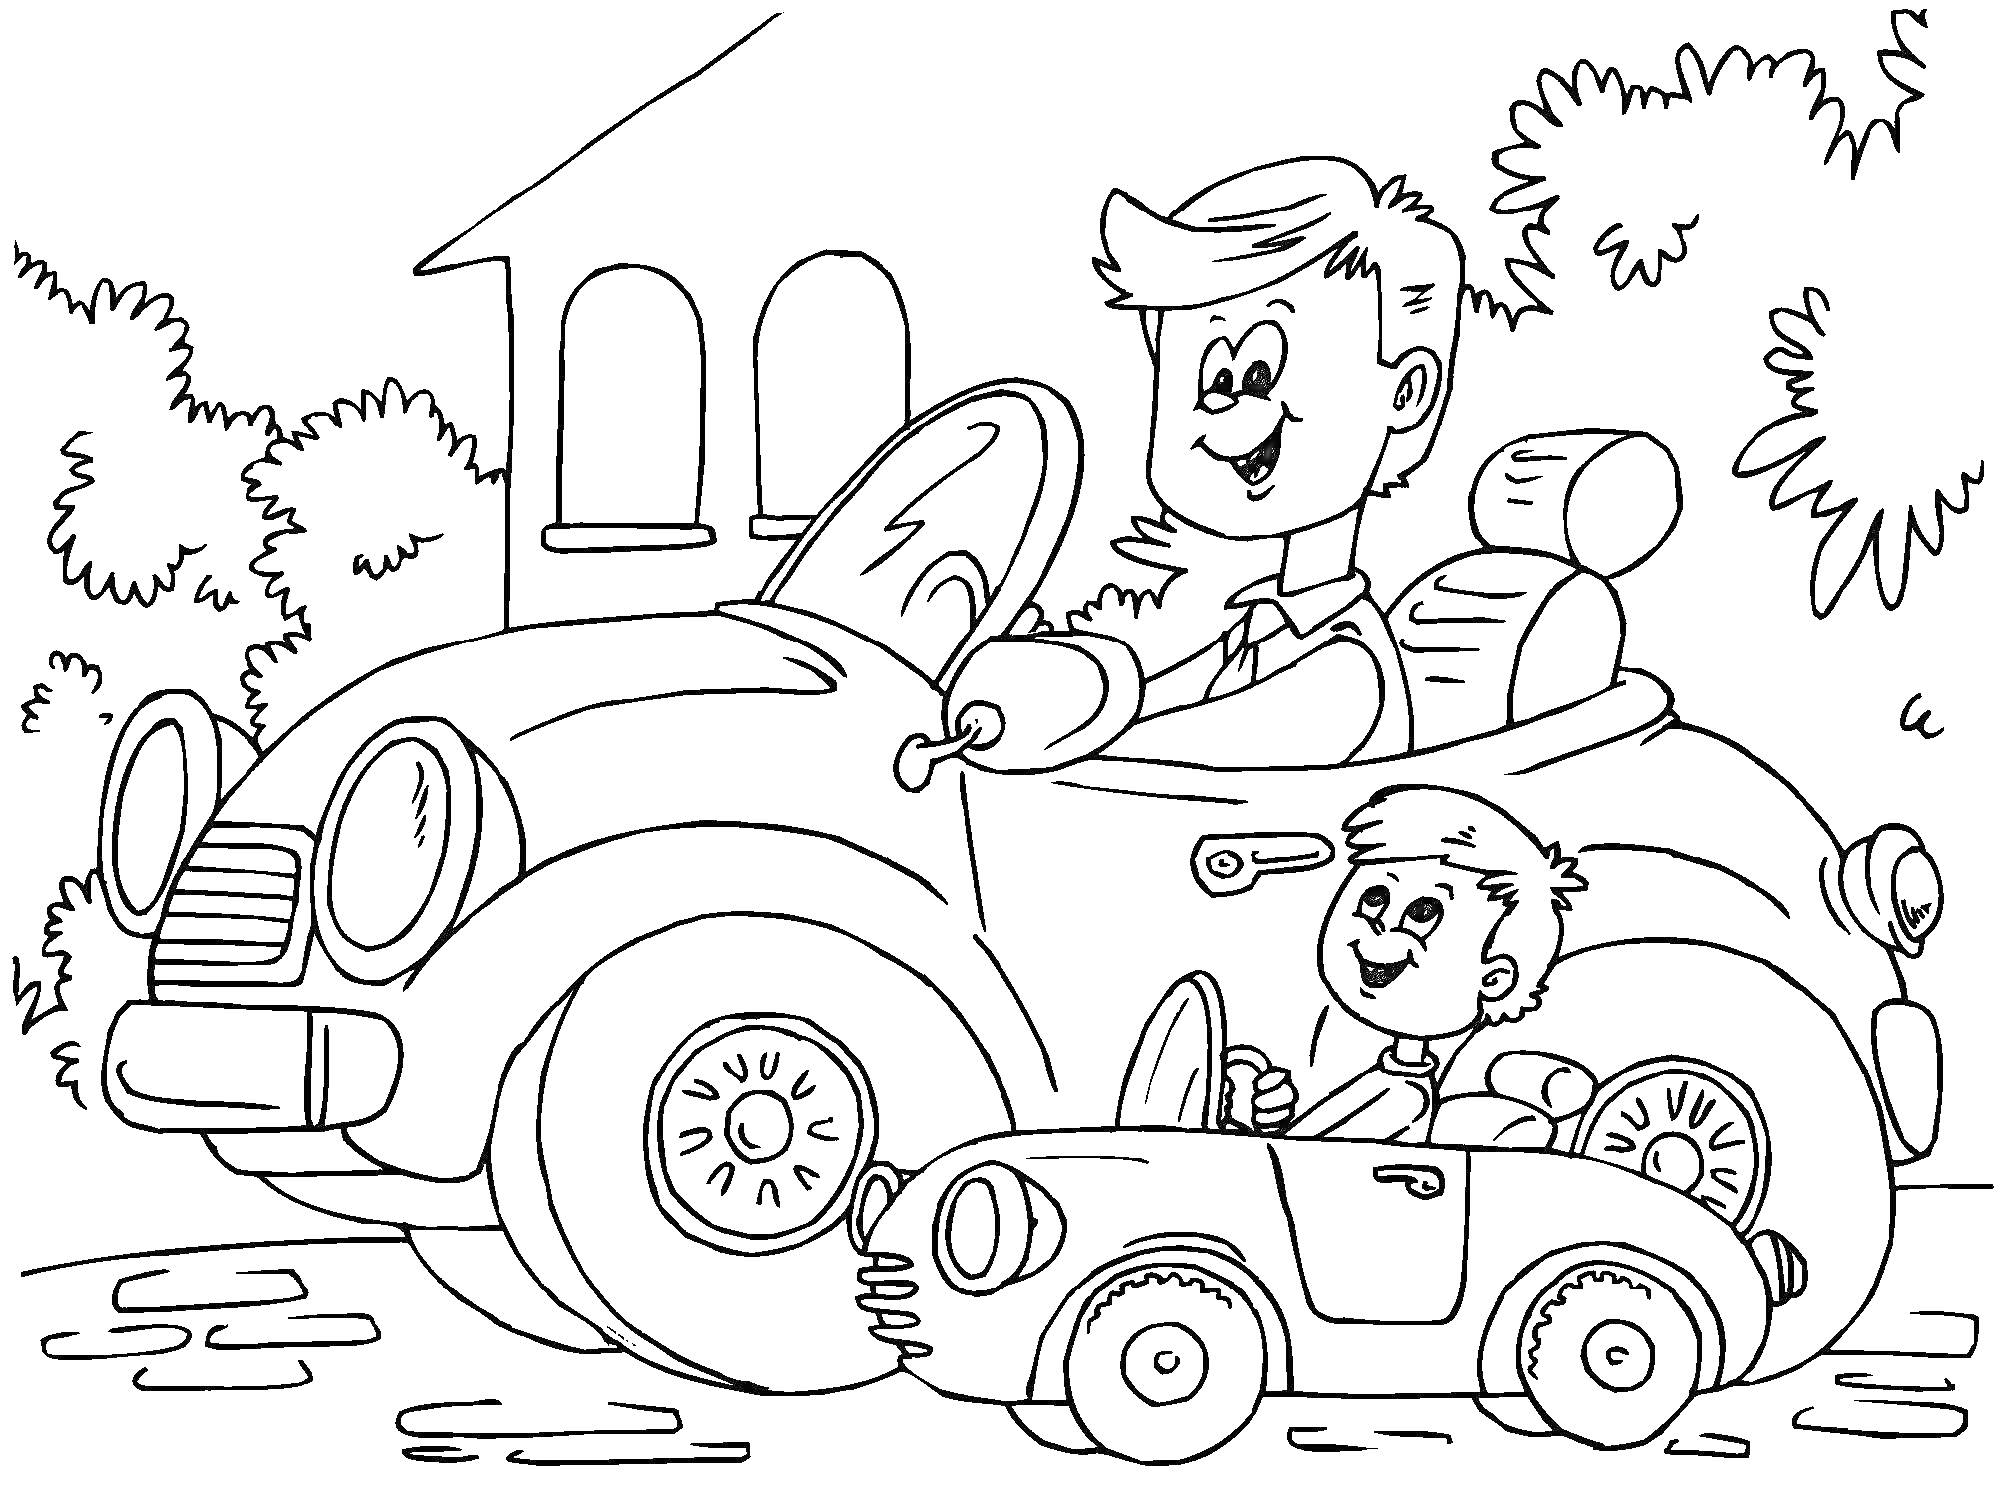 Папа и сын в автомобиле и игрушечном автомобиле на дороге